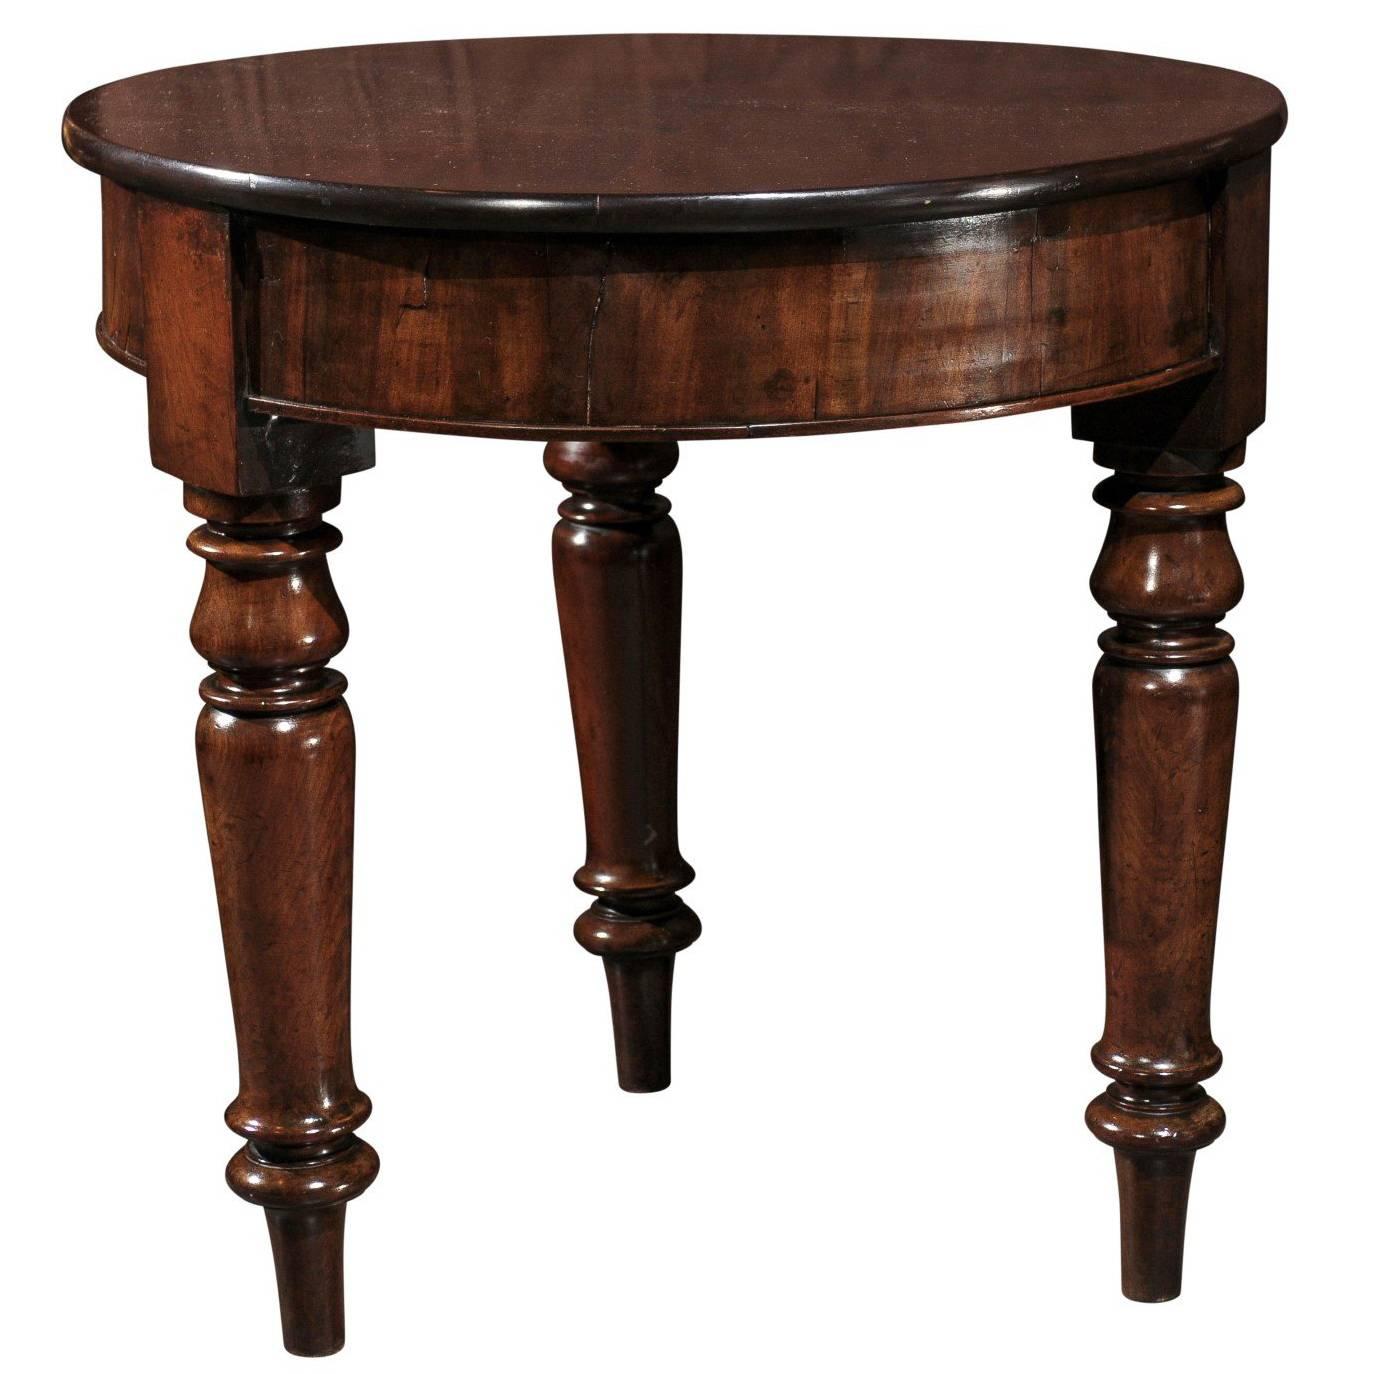 Mid 19th century English Mahogany Round Table Raised on Three Turned Legs